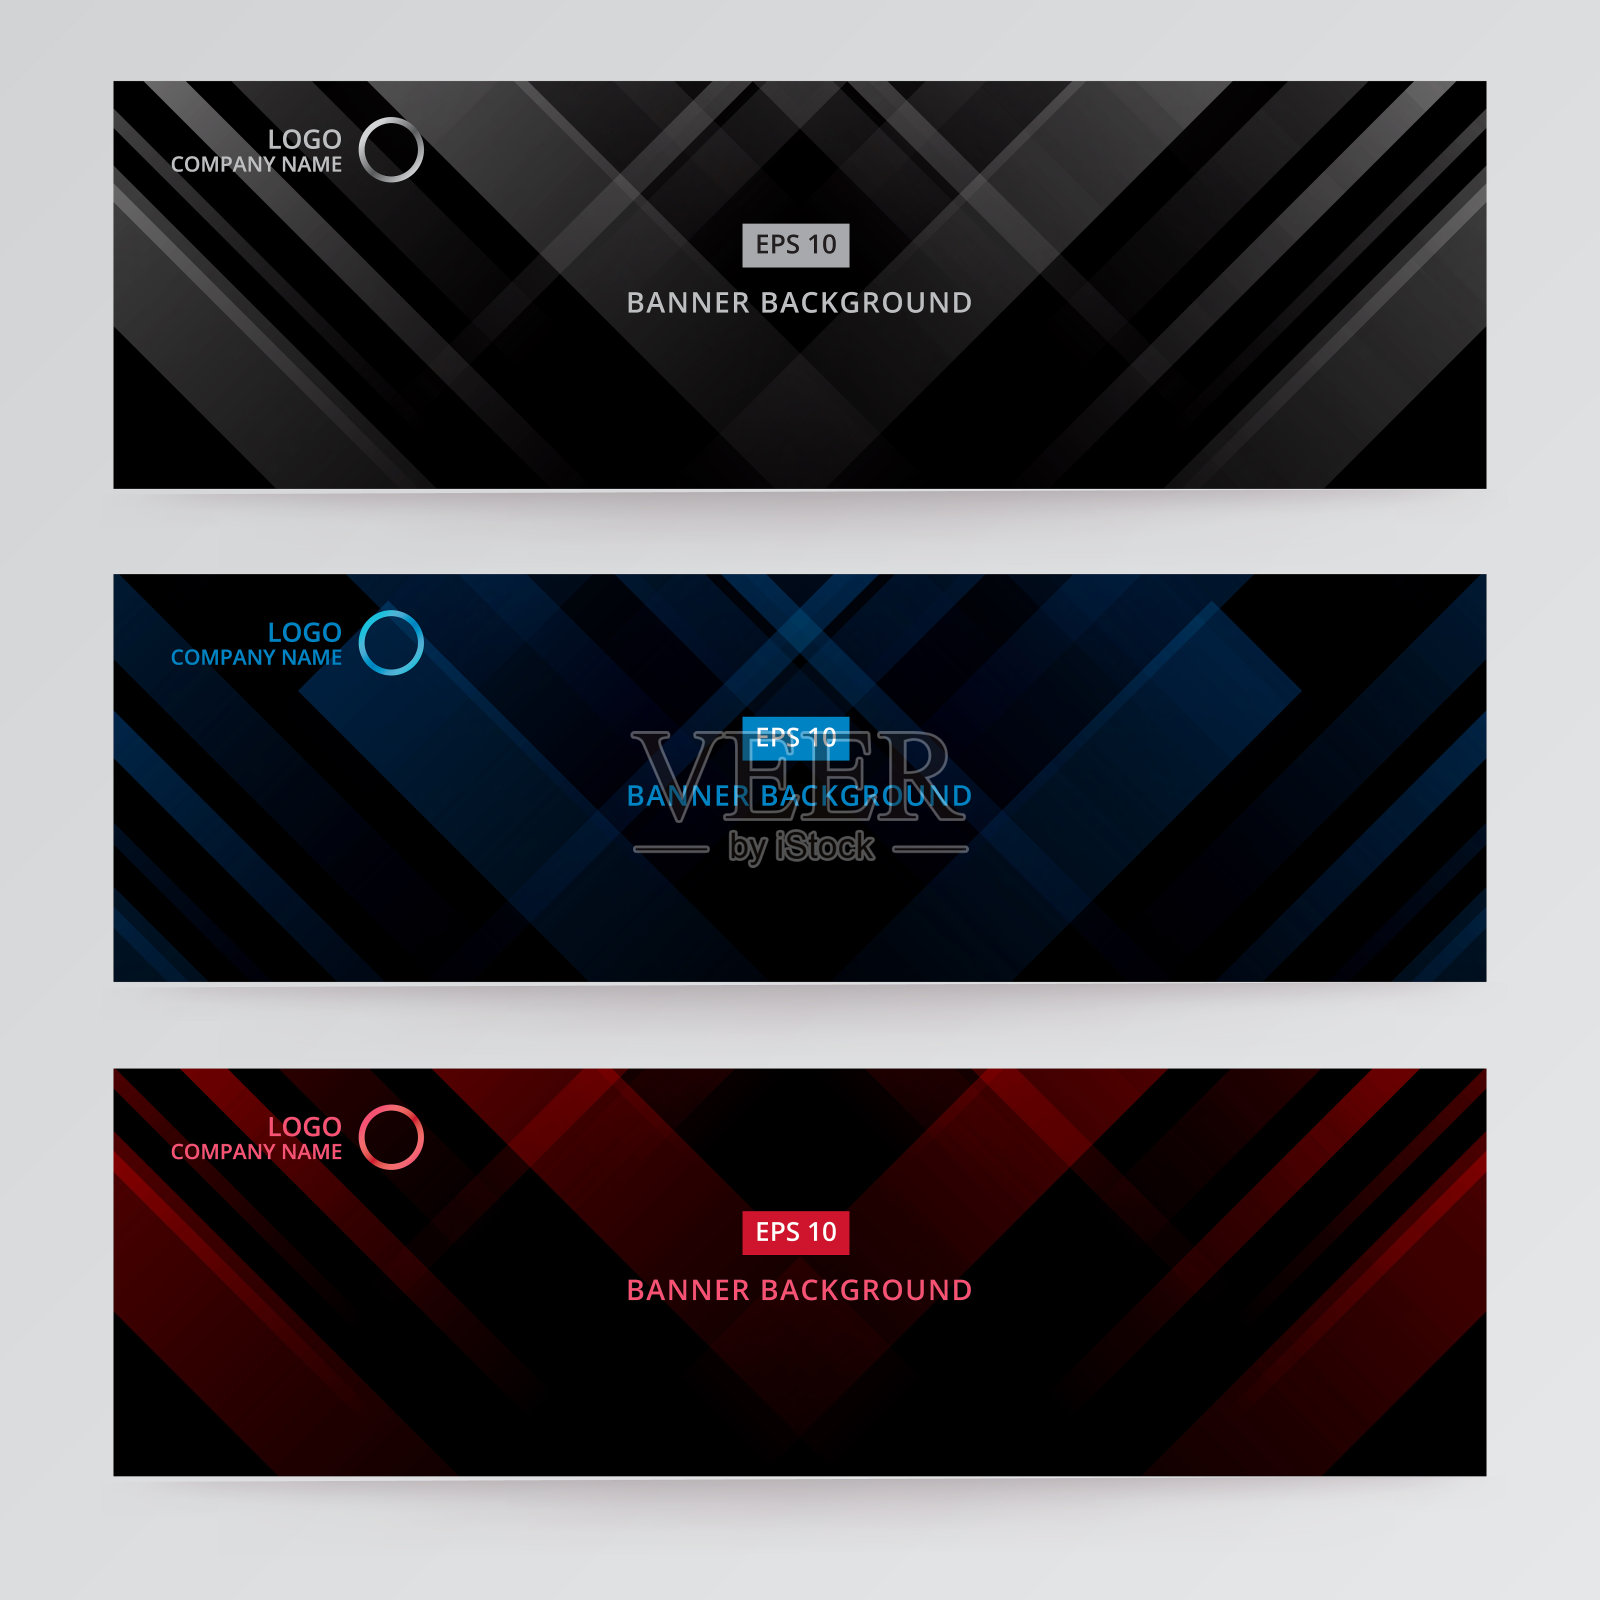 横幅网页模板抽象黑、灰、蓝、红技术设计设计模板素材